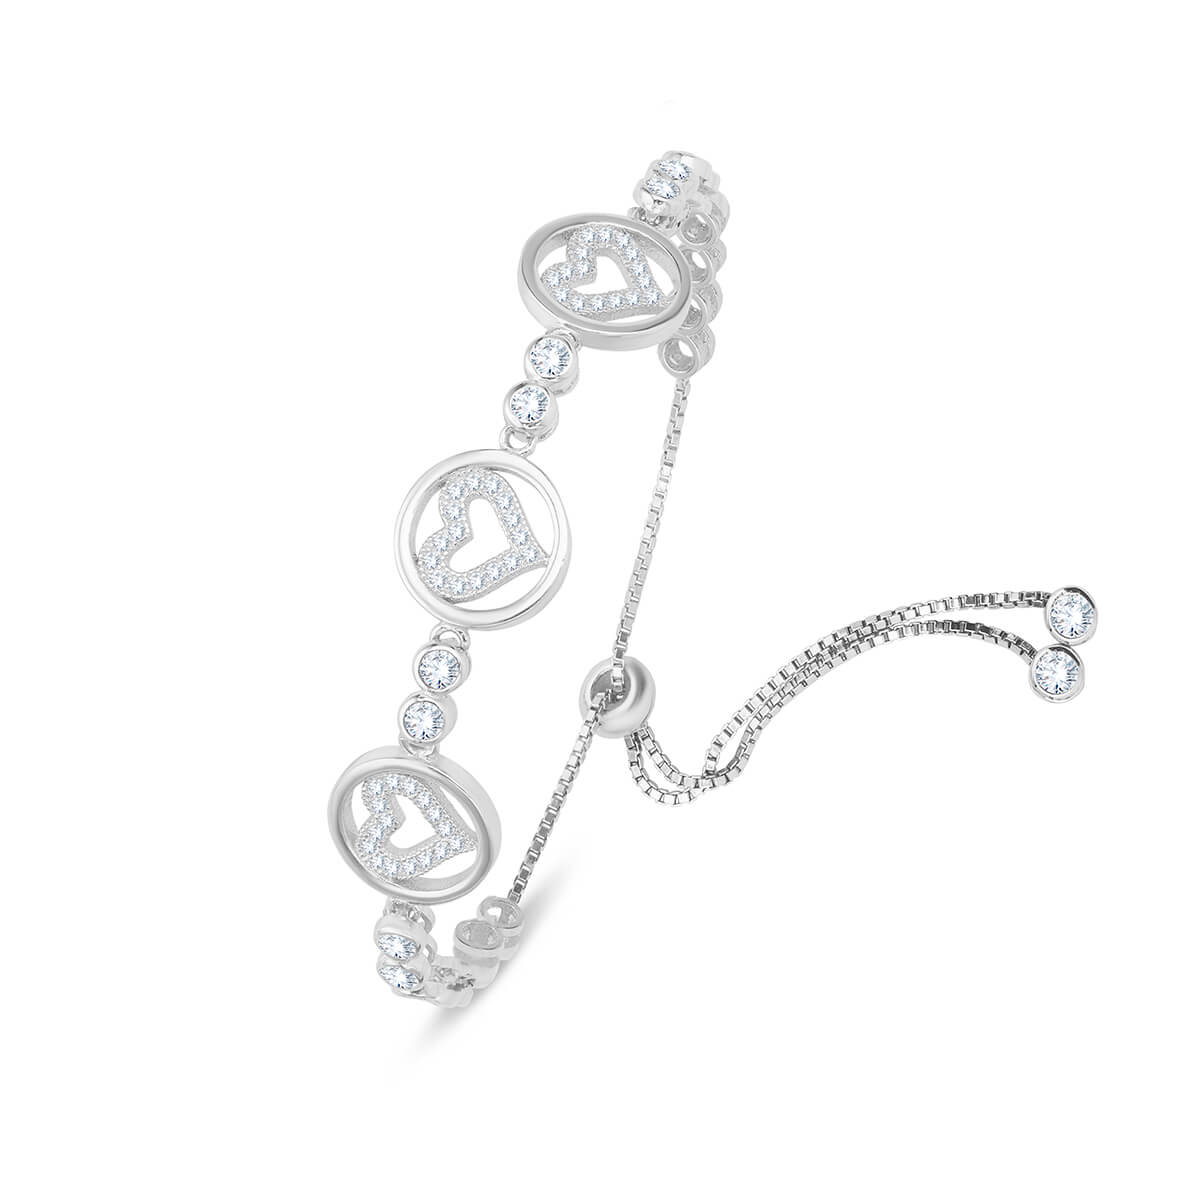 Stunning Halo Heart Bracelet in Silver